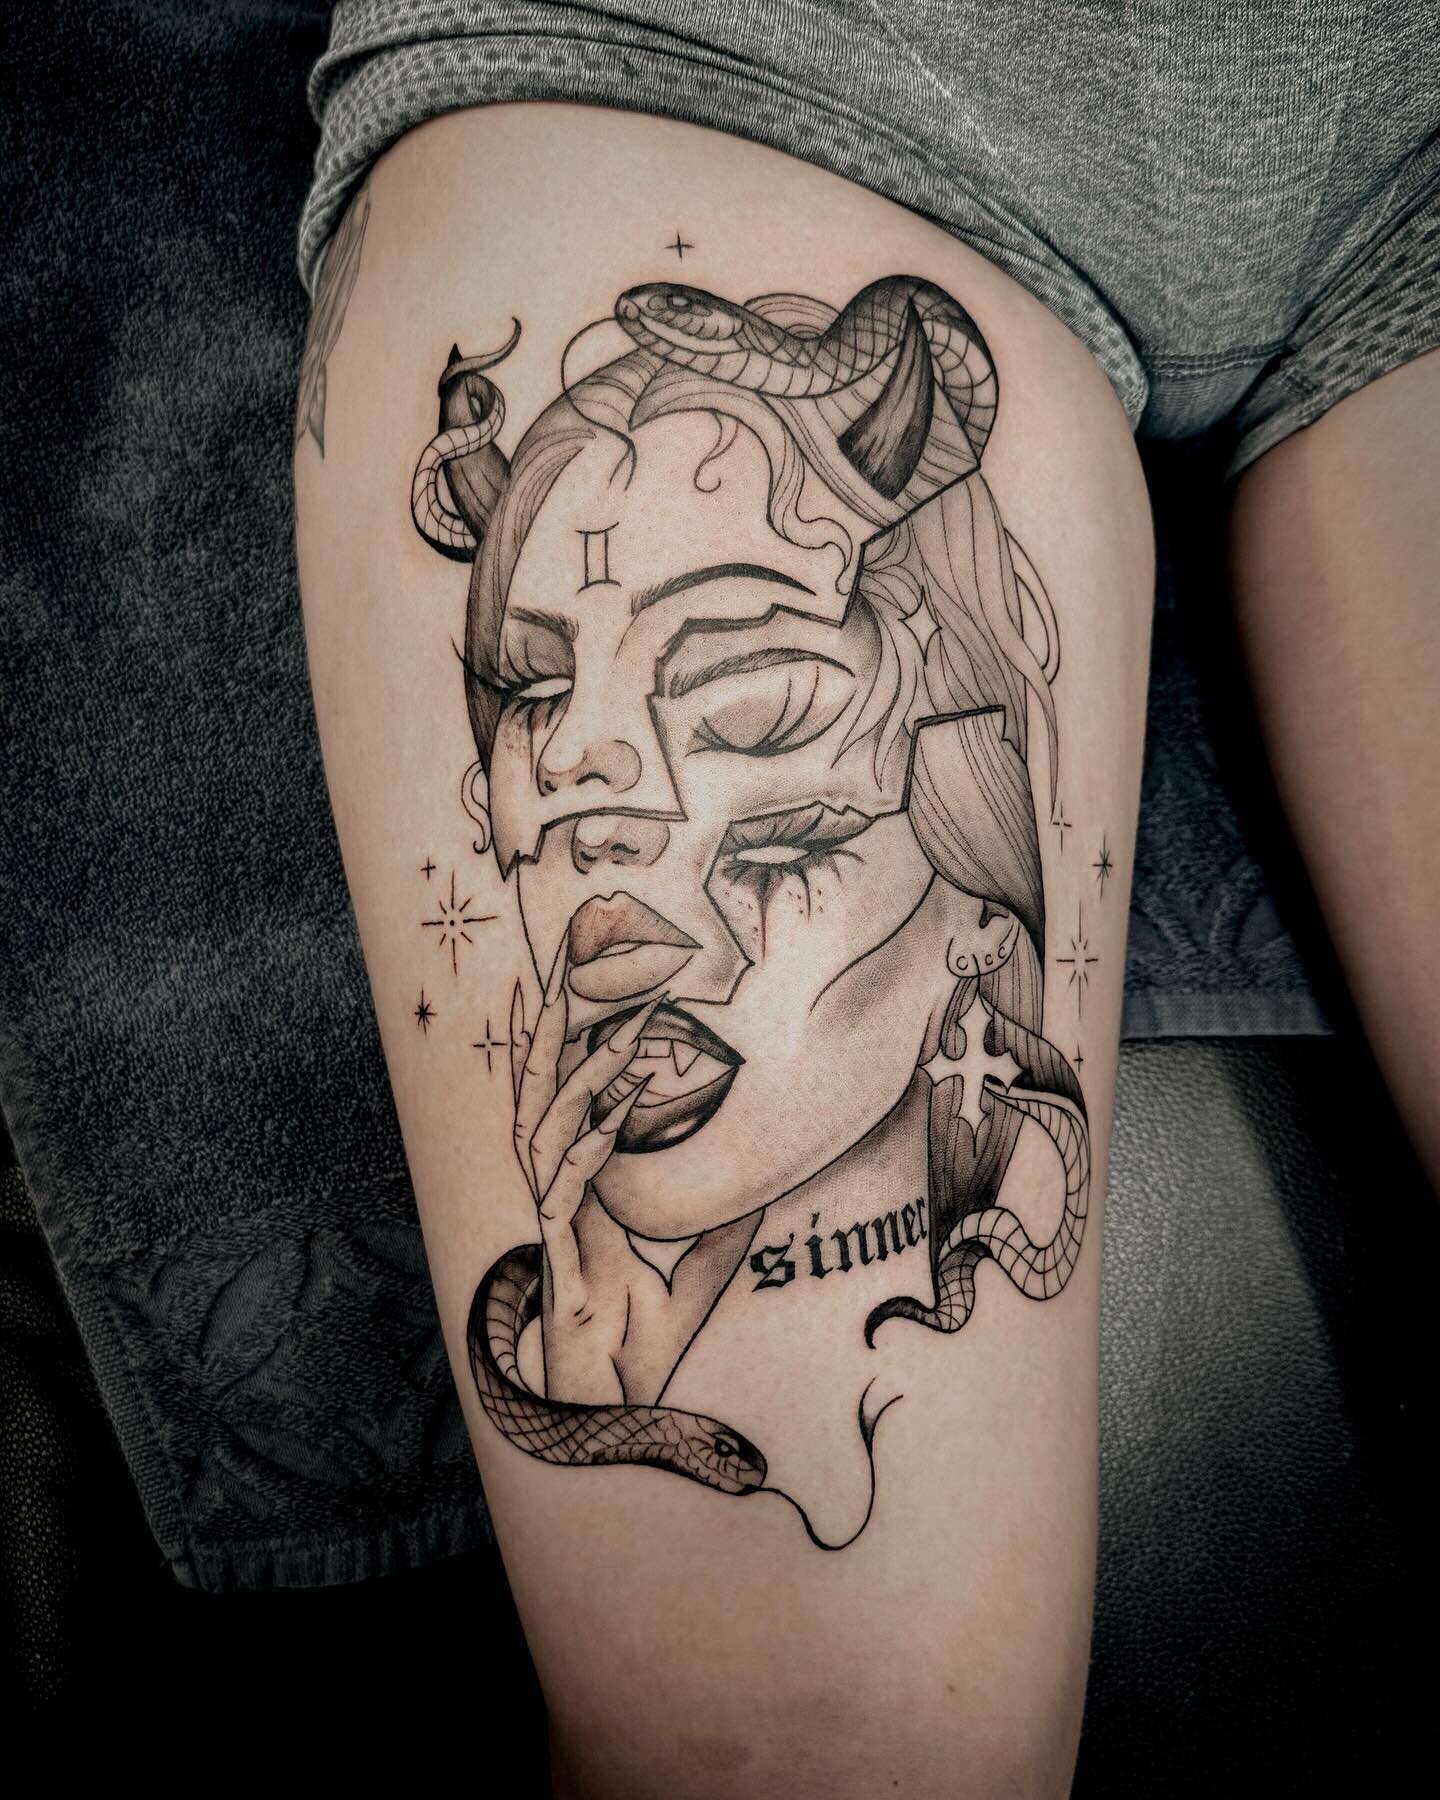 Devil girl
.
.
.
#tattoo #tattoos #tattooideas #birsfelden #basel #studio #switzerland #tattooforwoman #legtattoo #devilgirl #devil #devilgirltattoo